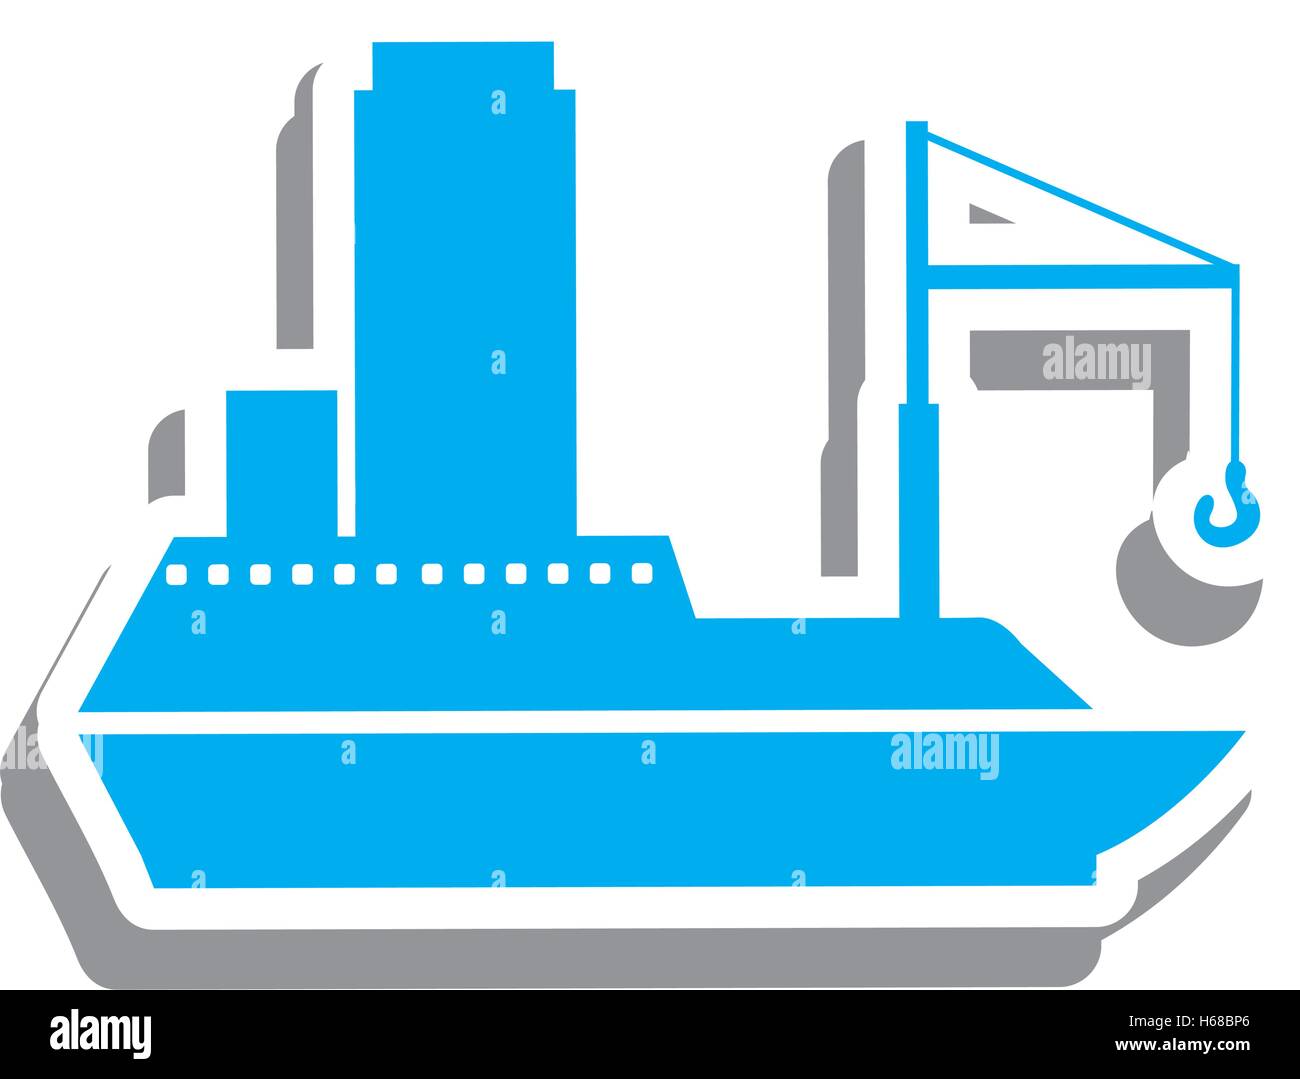 cargo ship icon pictogram image Stock Vector